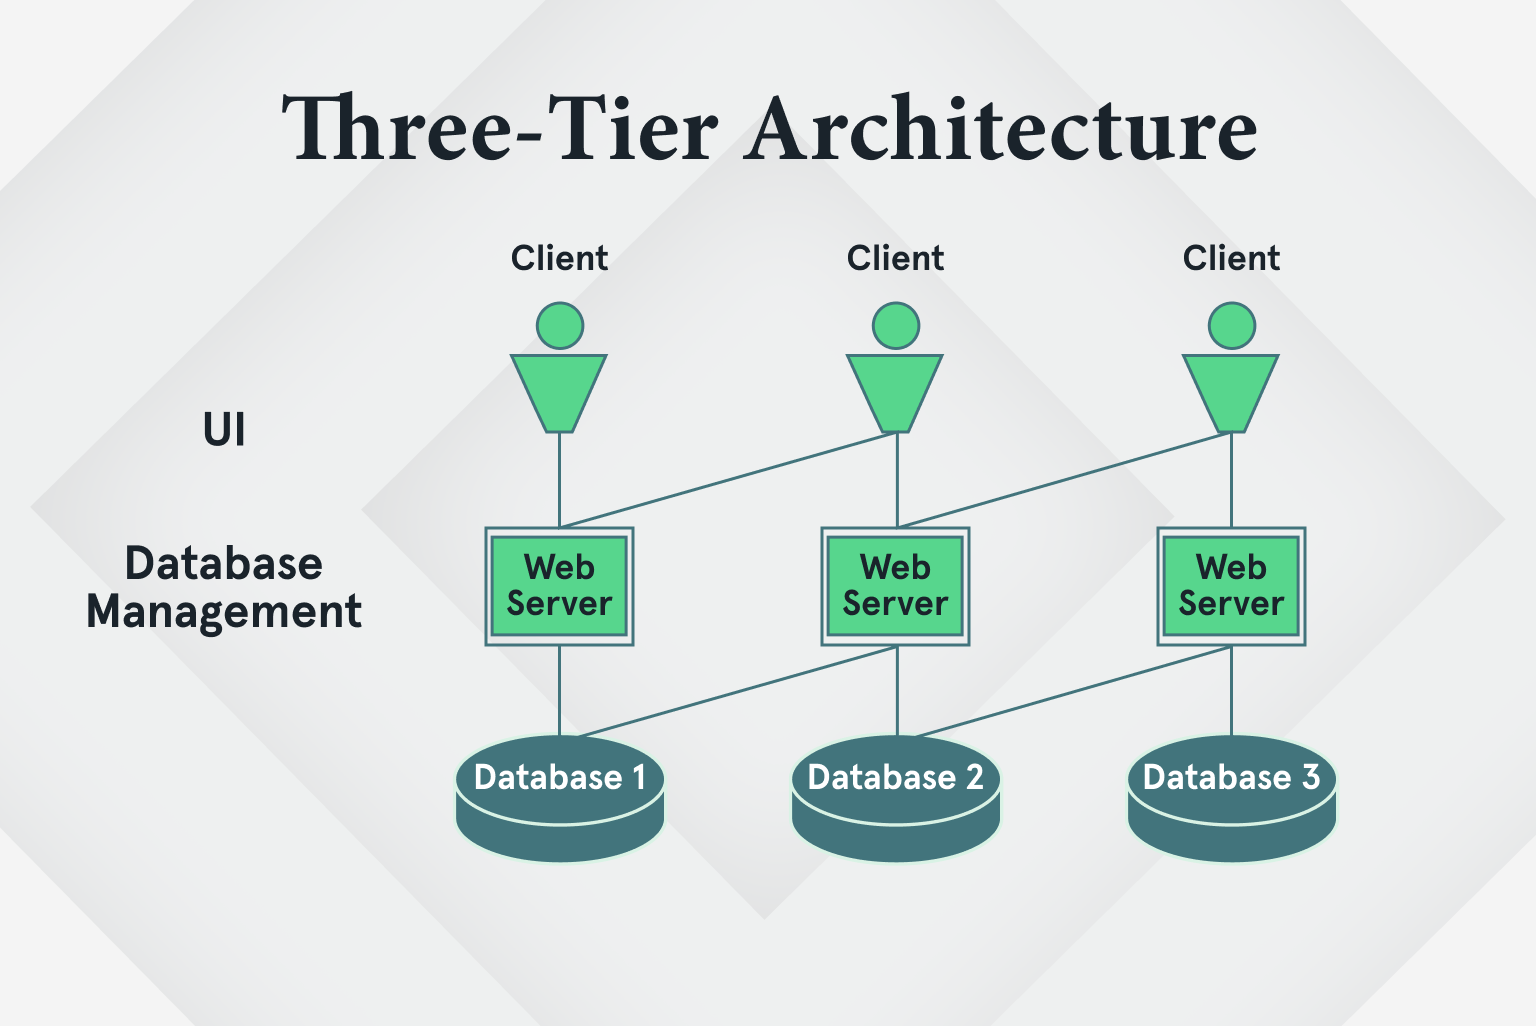 Three-tier Architecture